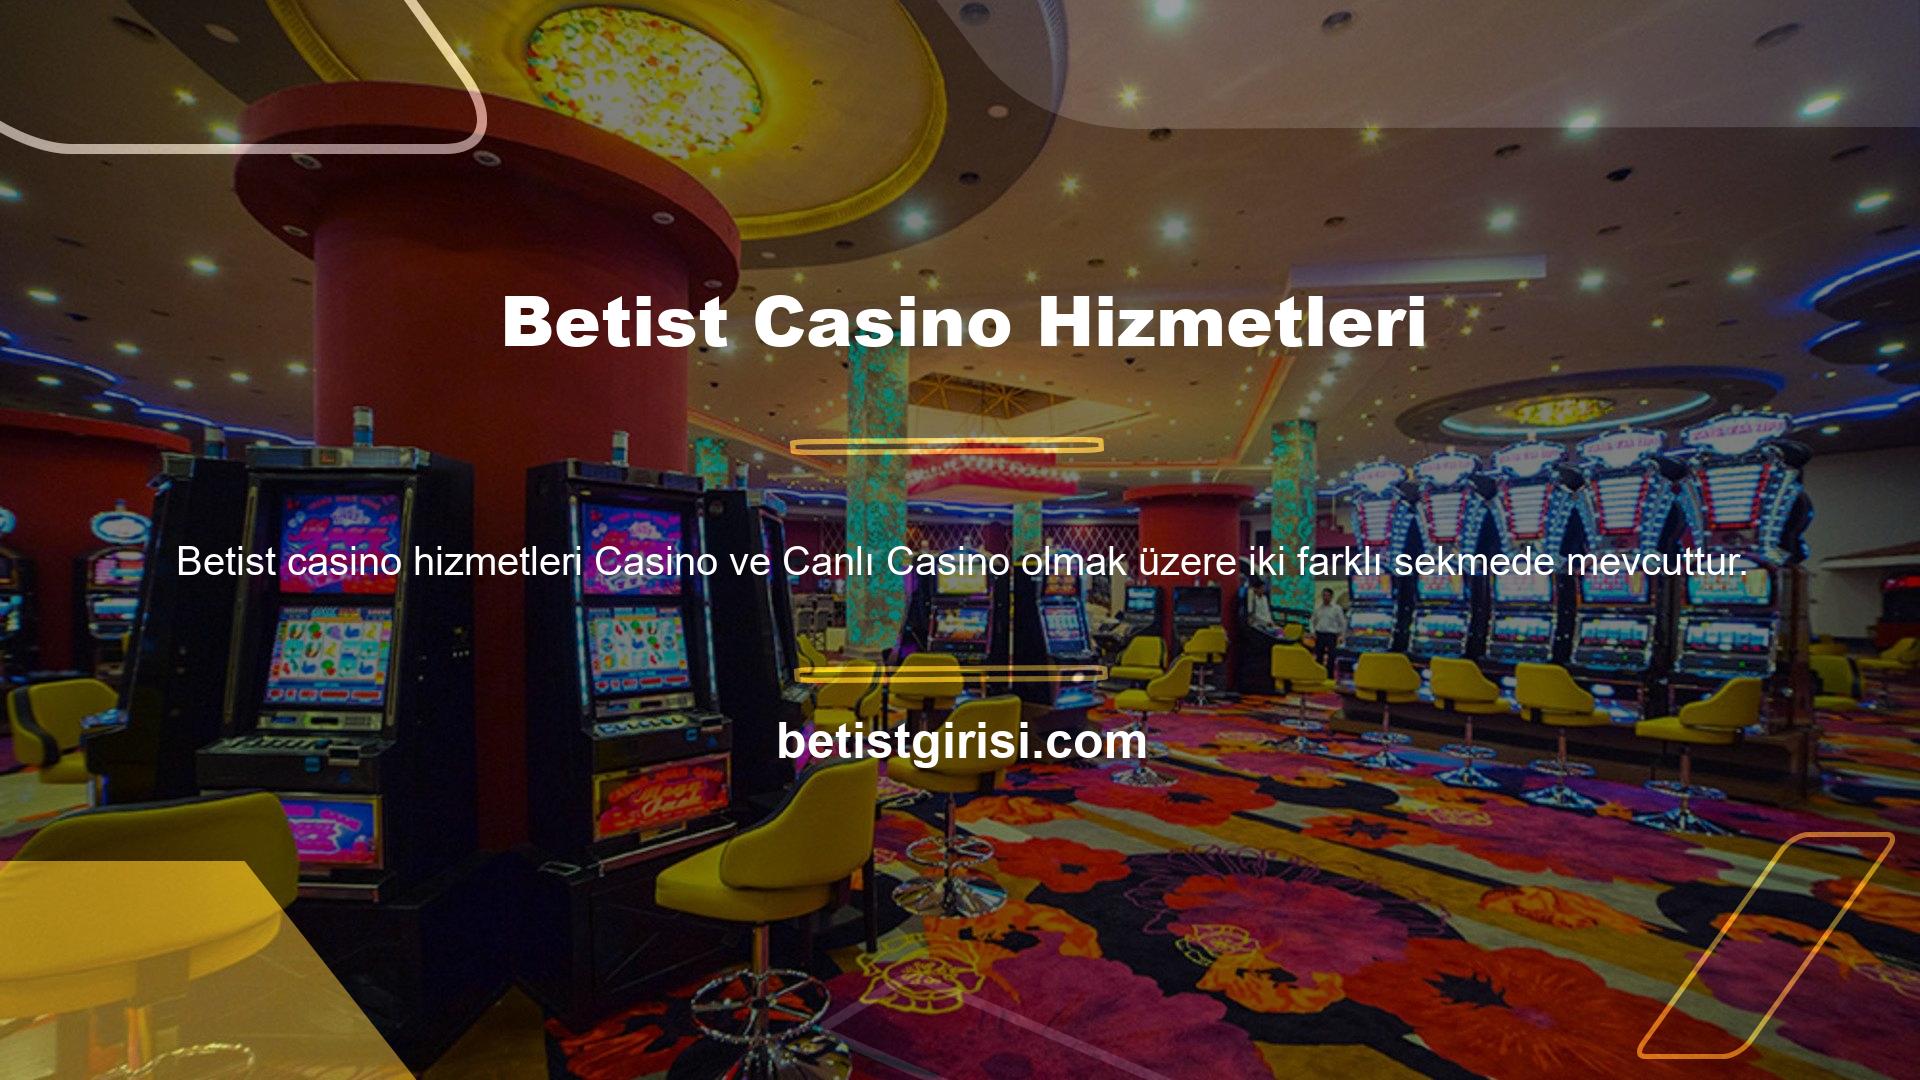 Casino başlıklı bölüme bakarsanız, slot makinelerinin müşteriler tarafından sıklıkla kullanıldığını göreceksiniz